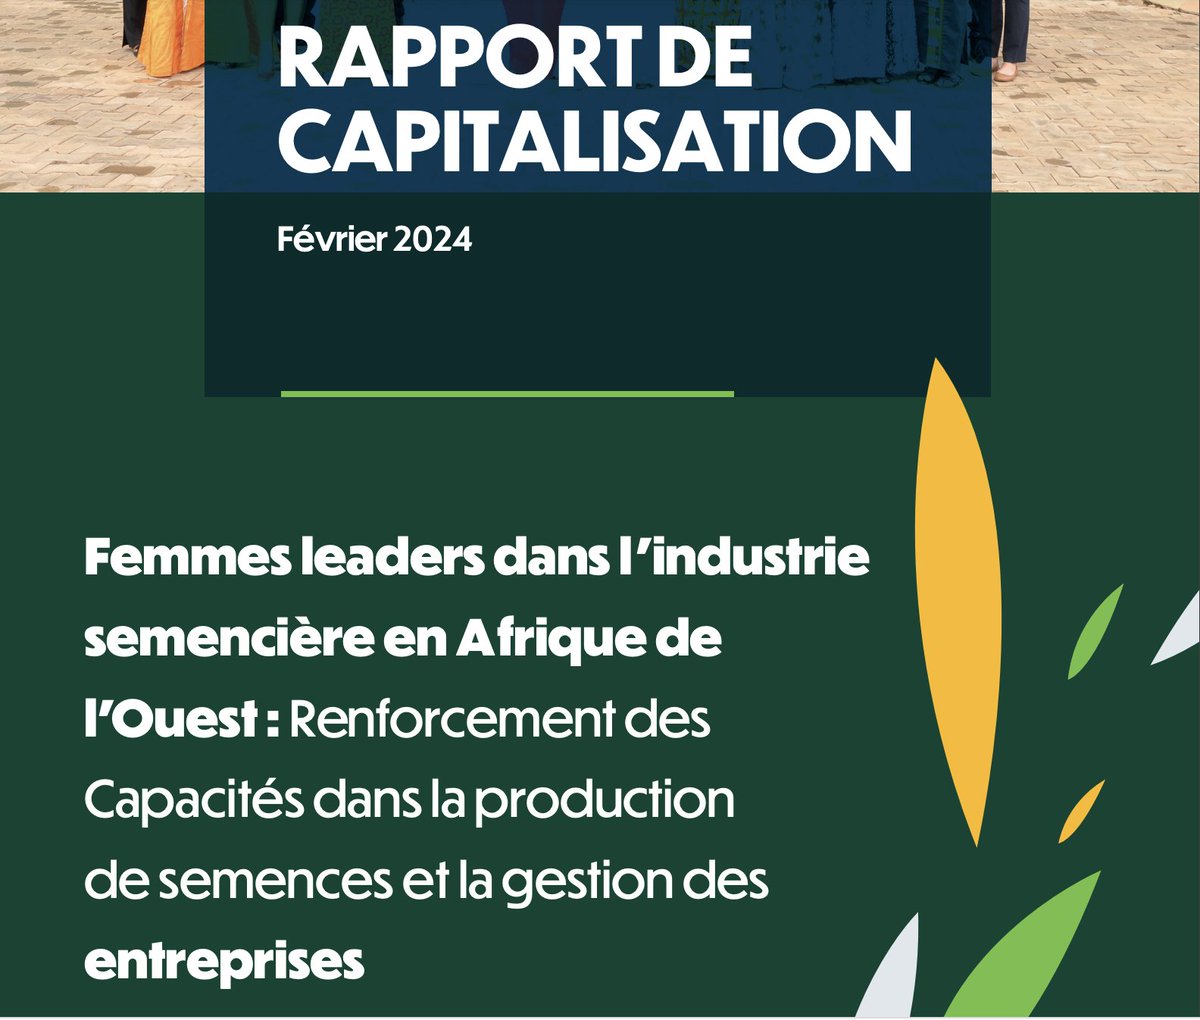 📗 Découvrez notre rapport exclusif sur les #Femmes Leaders dans l'industrie semencière en Afrique de l'Ouest ! Ce document dévoile les résultats concrets du projet #CAADPXP4. 

🔗Téléchargez le document 👉🏾 bit.ly/493CV66

#SeedBusiness #EmpoweringWomen